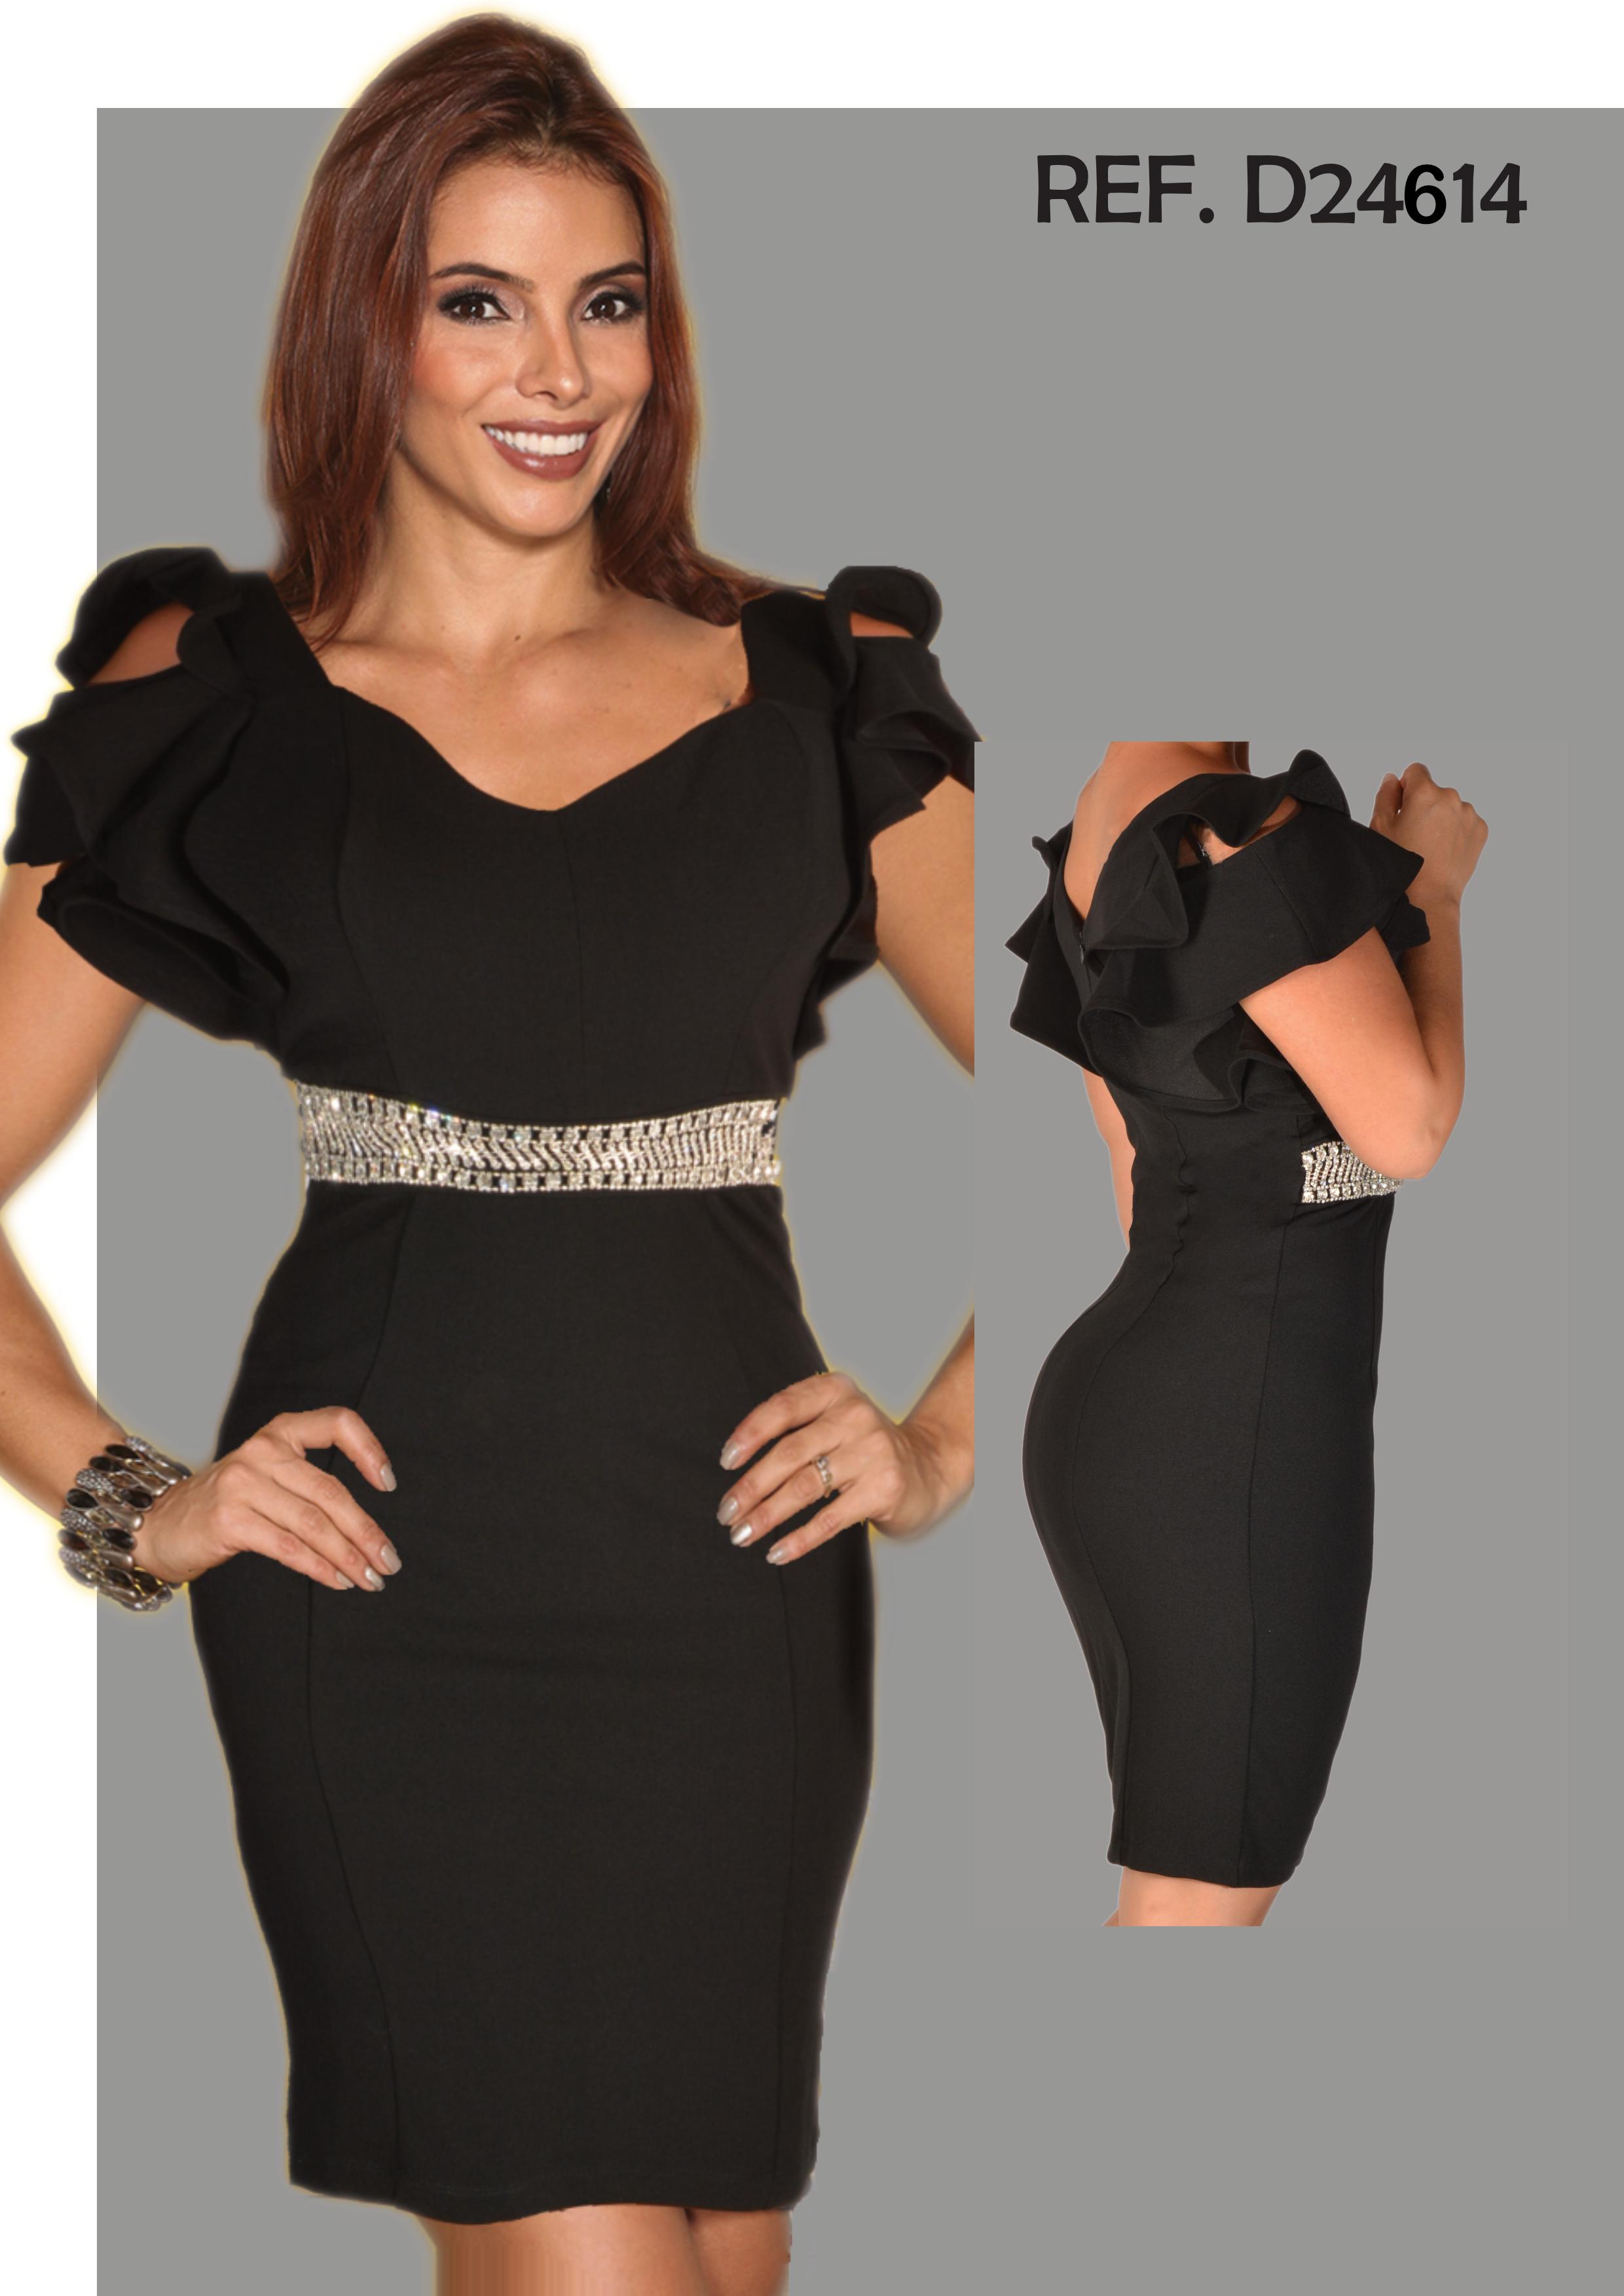 Comprar Sensacional Vestido de Dama Americano Color Negro con Diseño tipo cinturón en pedrería largo clásico a la rodilla